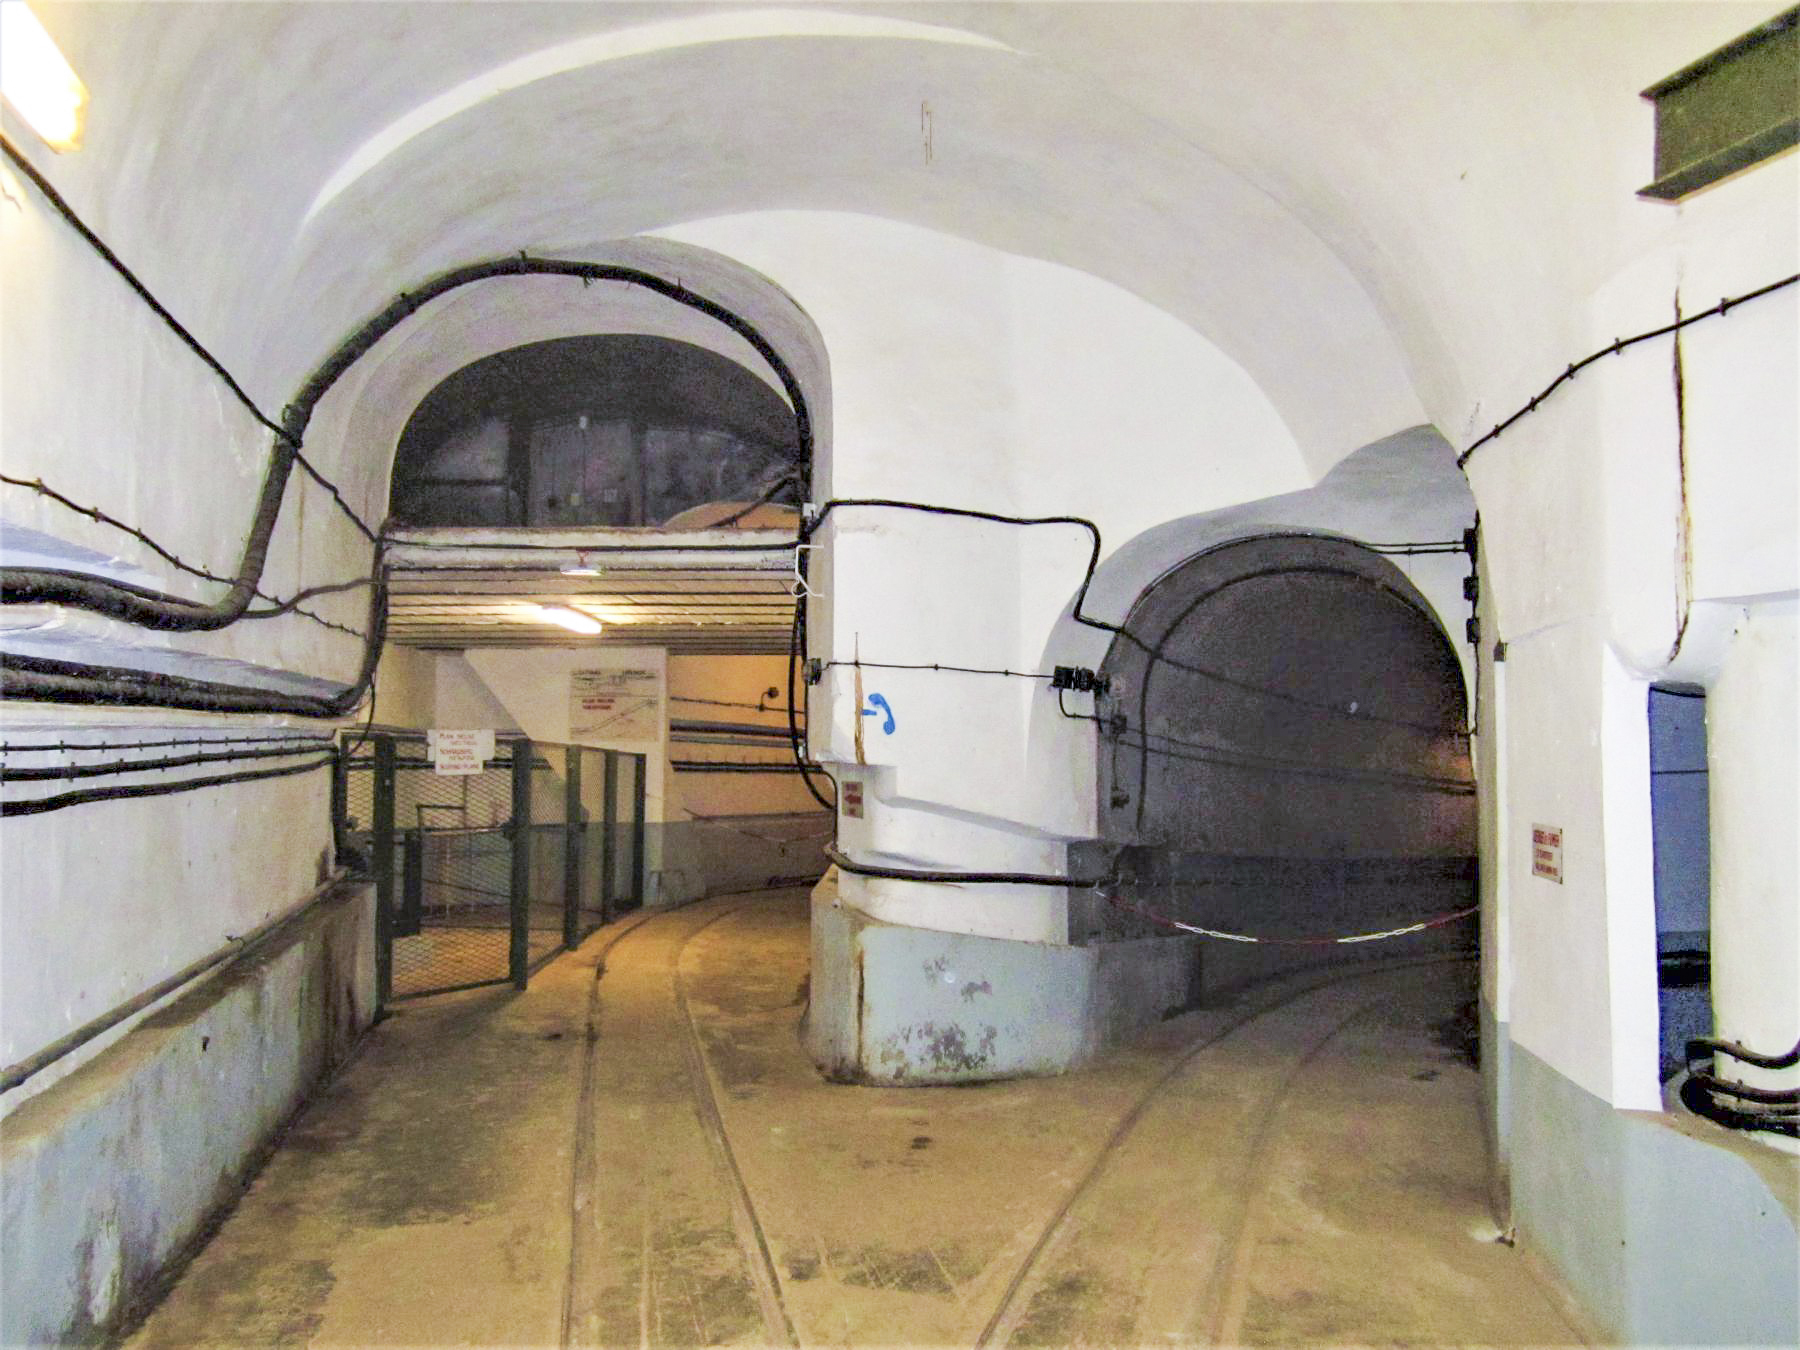 Ligne Maginot - FOUR A CHAUX - FAC - (Ouvrage d'artillerie) - Accès au plan incliné avec à gauche le local du treuil
A droite la galerie du magasin aux artifices